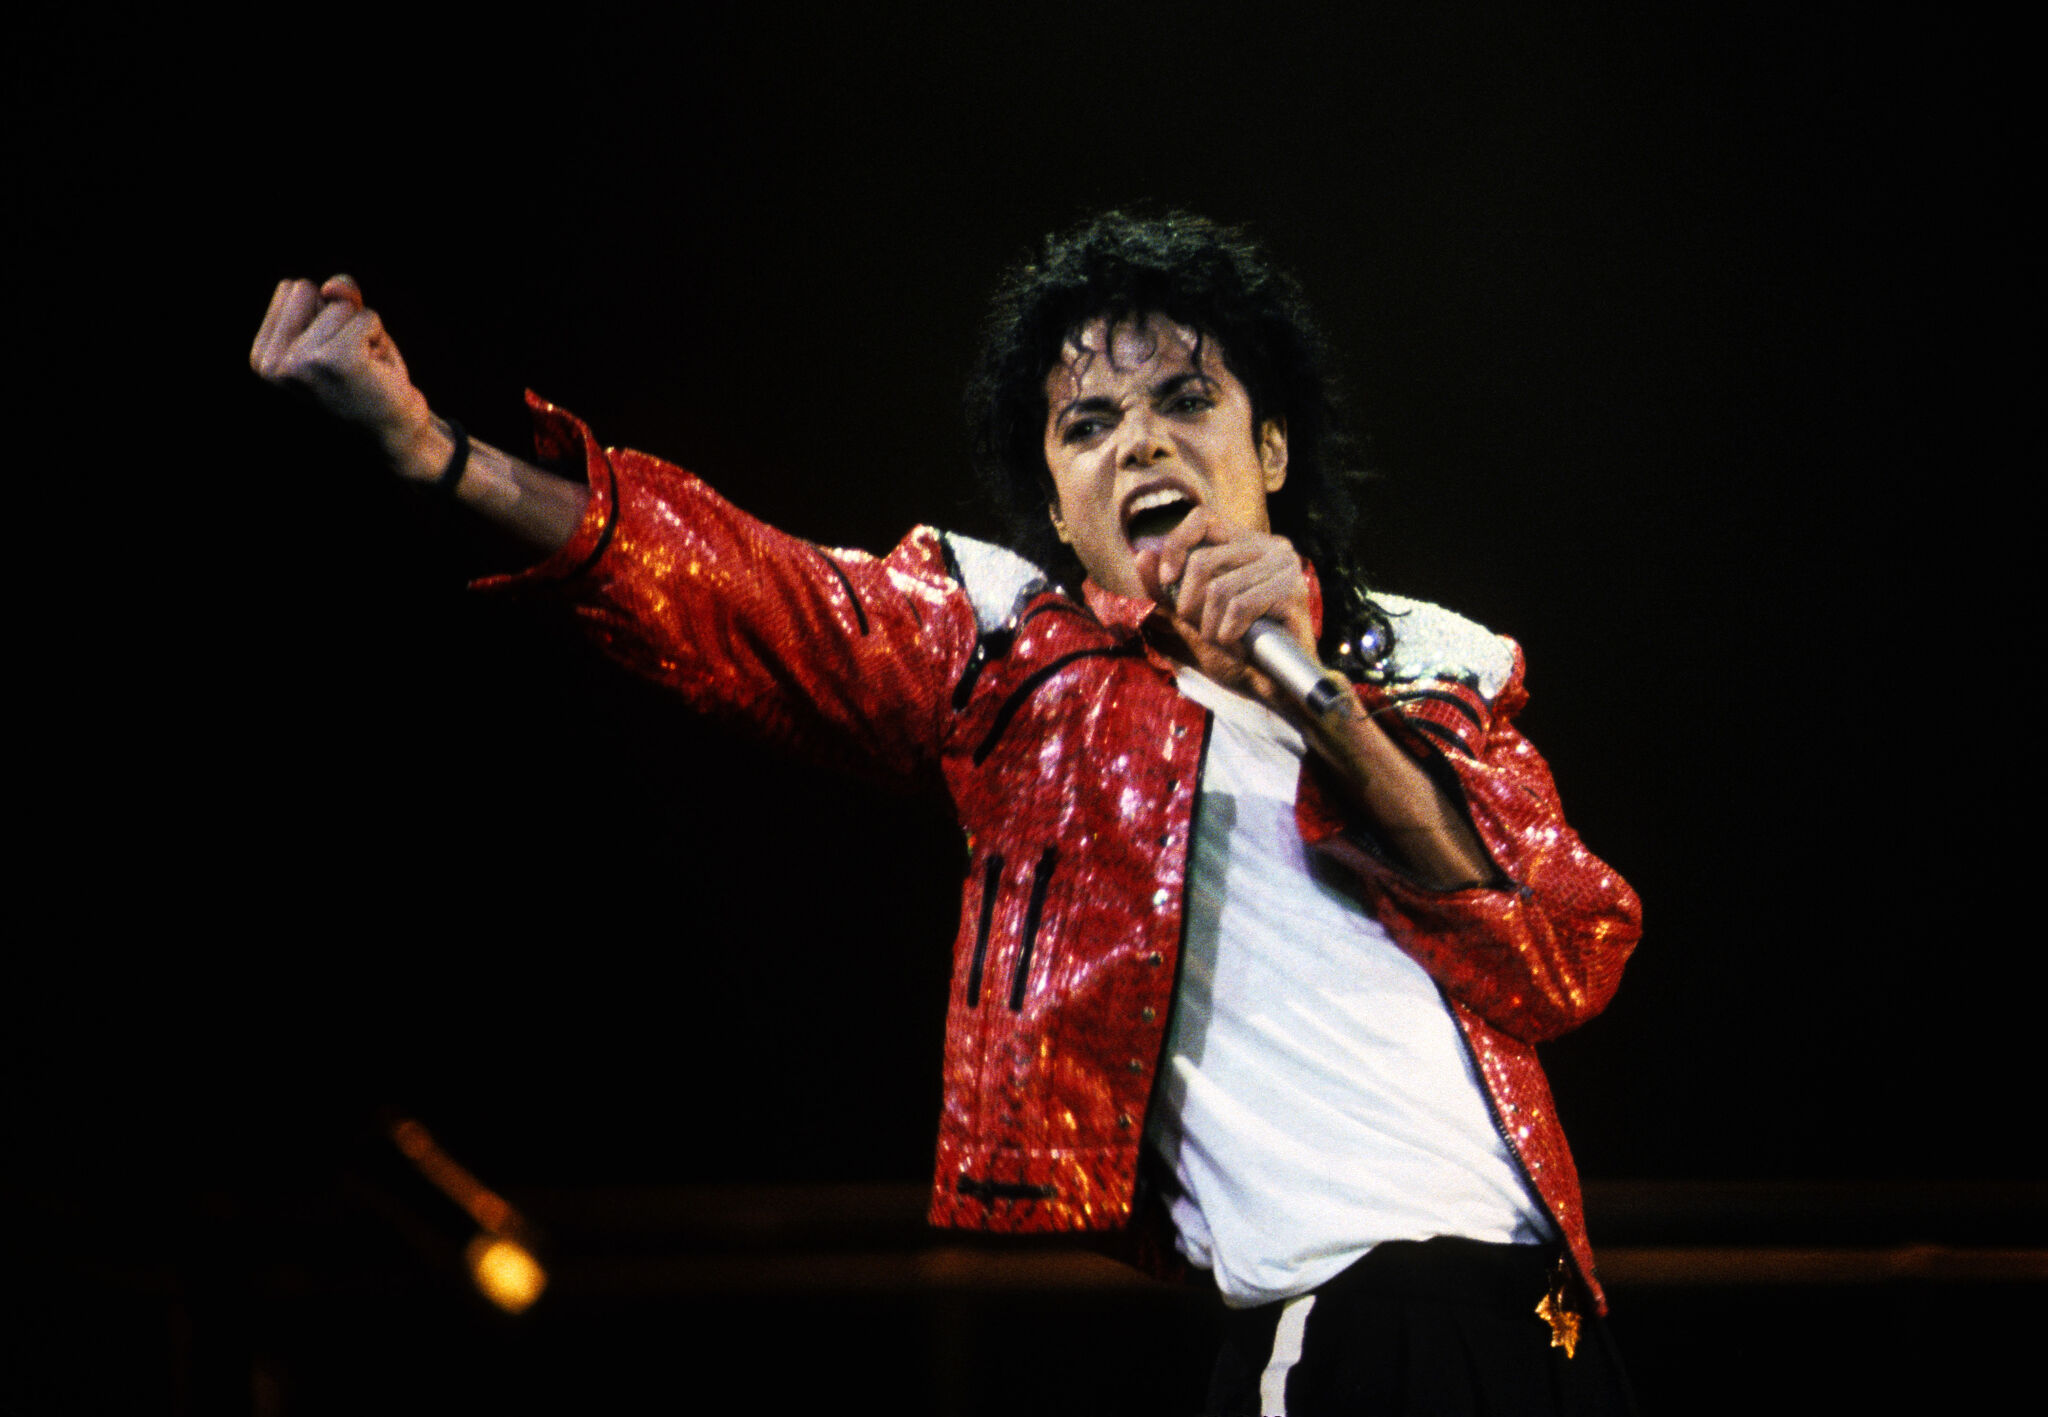 San Francisco's Michael Jackson musical is dangerous